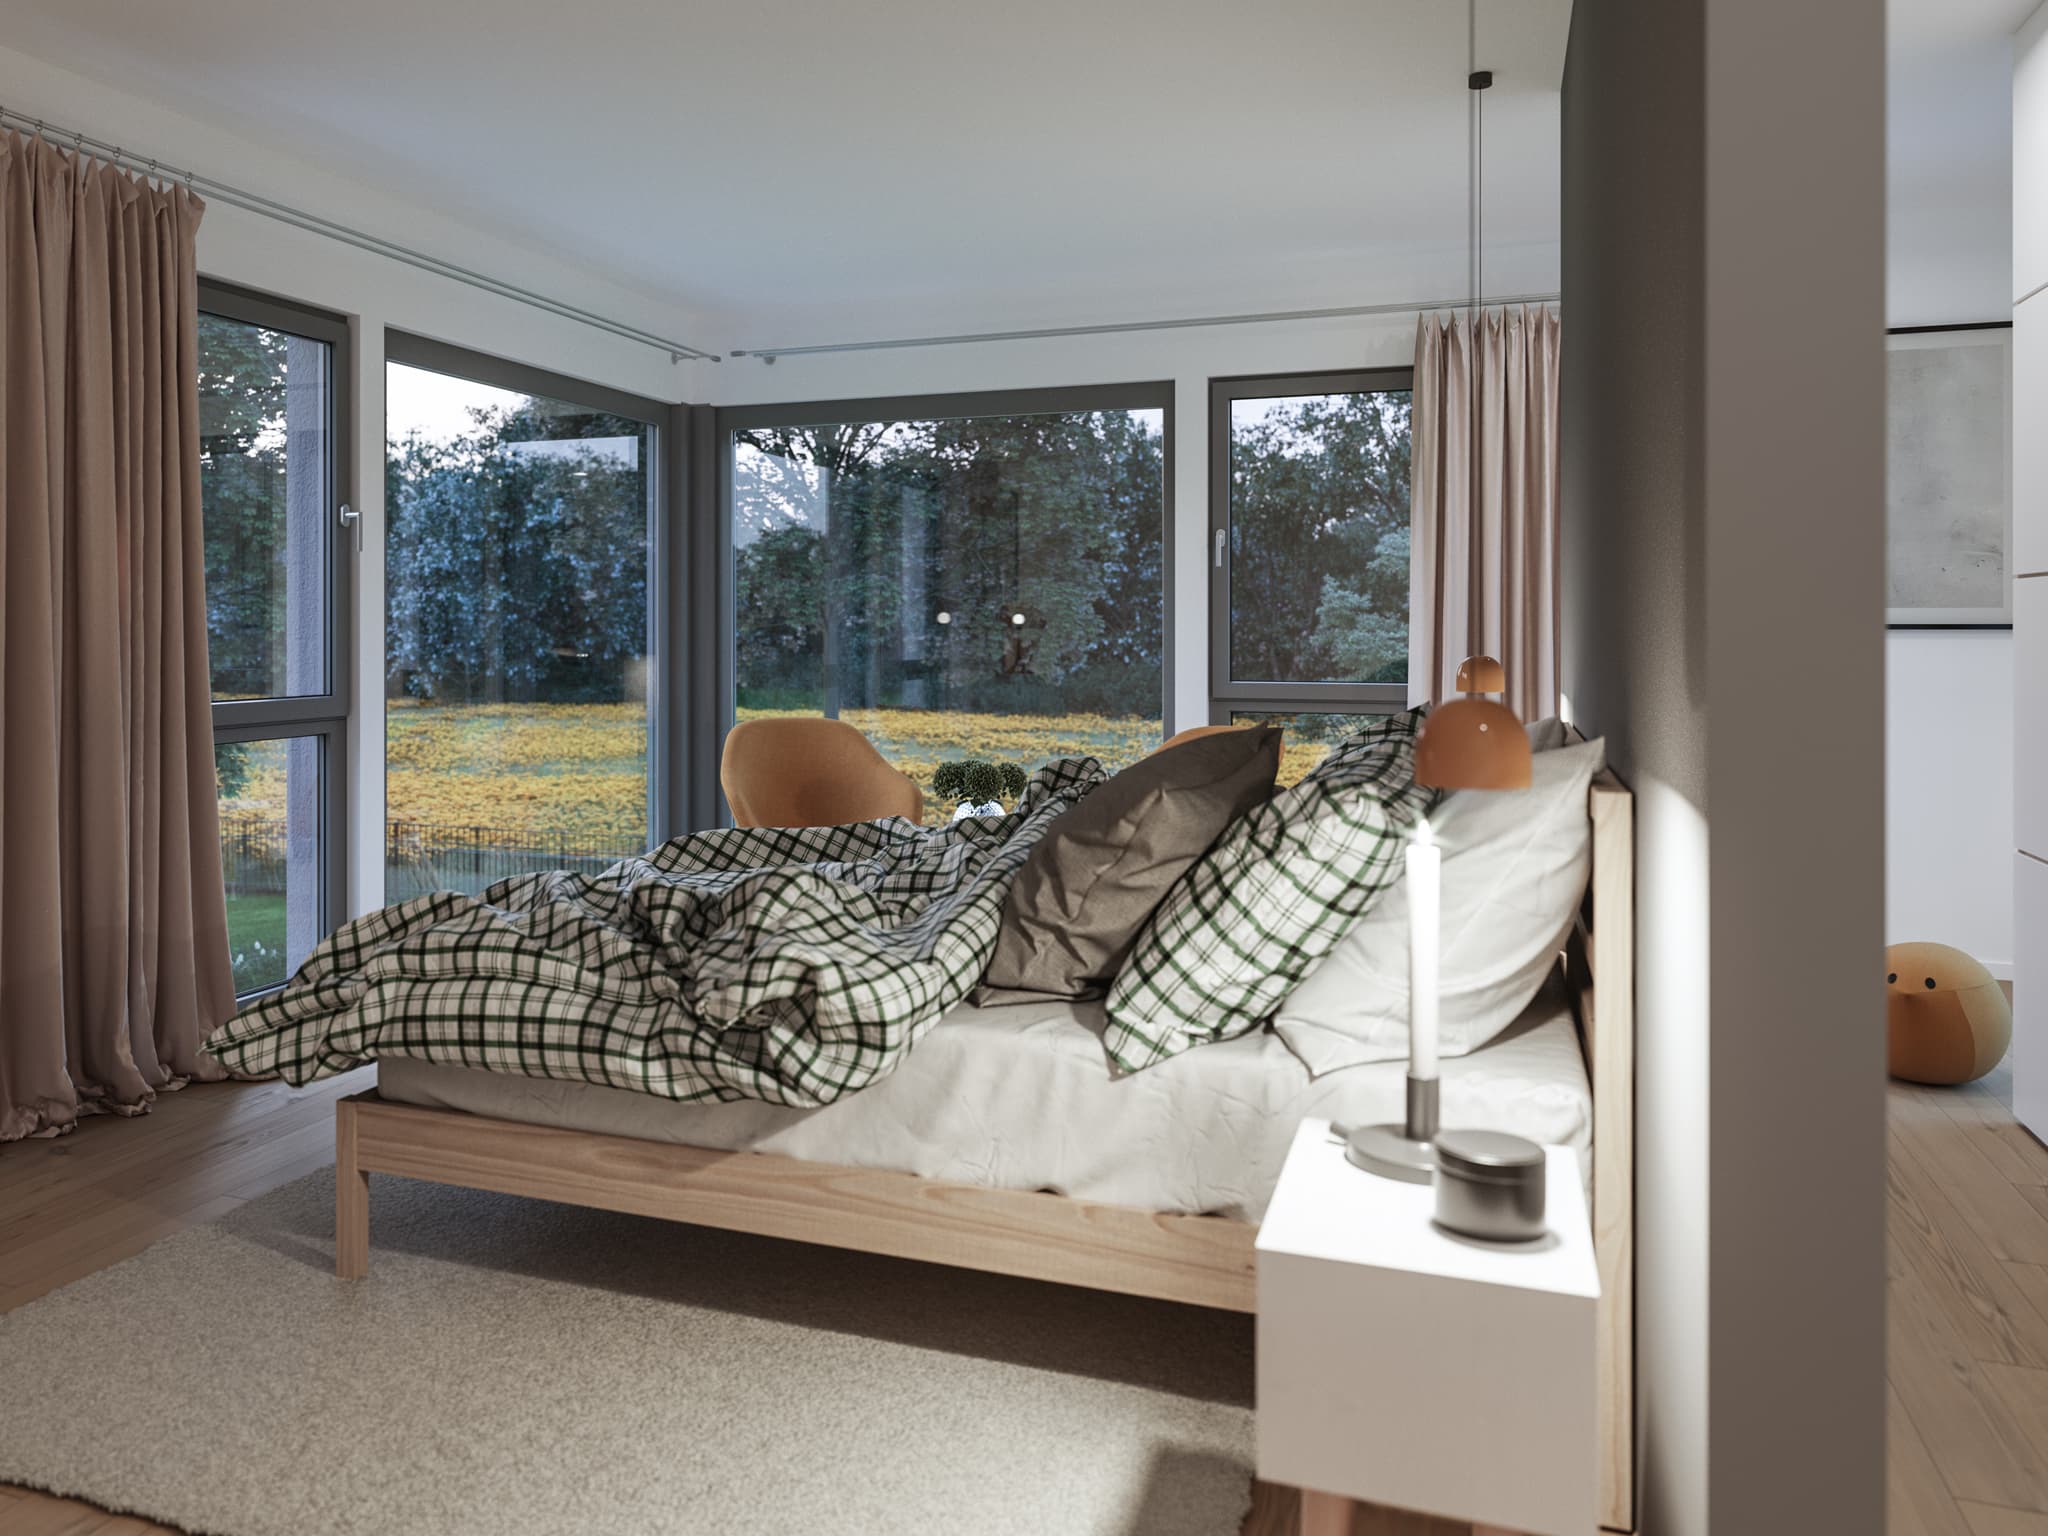 Schlafzimmer Ideen - Inneneinrichtung Fertighaus Living Haus SUNSHINE 154 V3 - HausbauDirekt.de